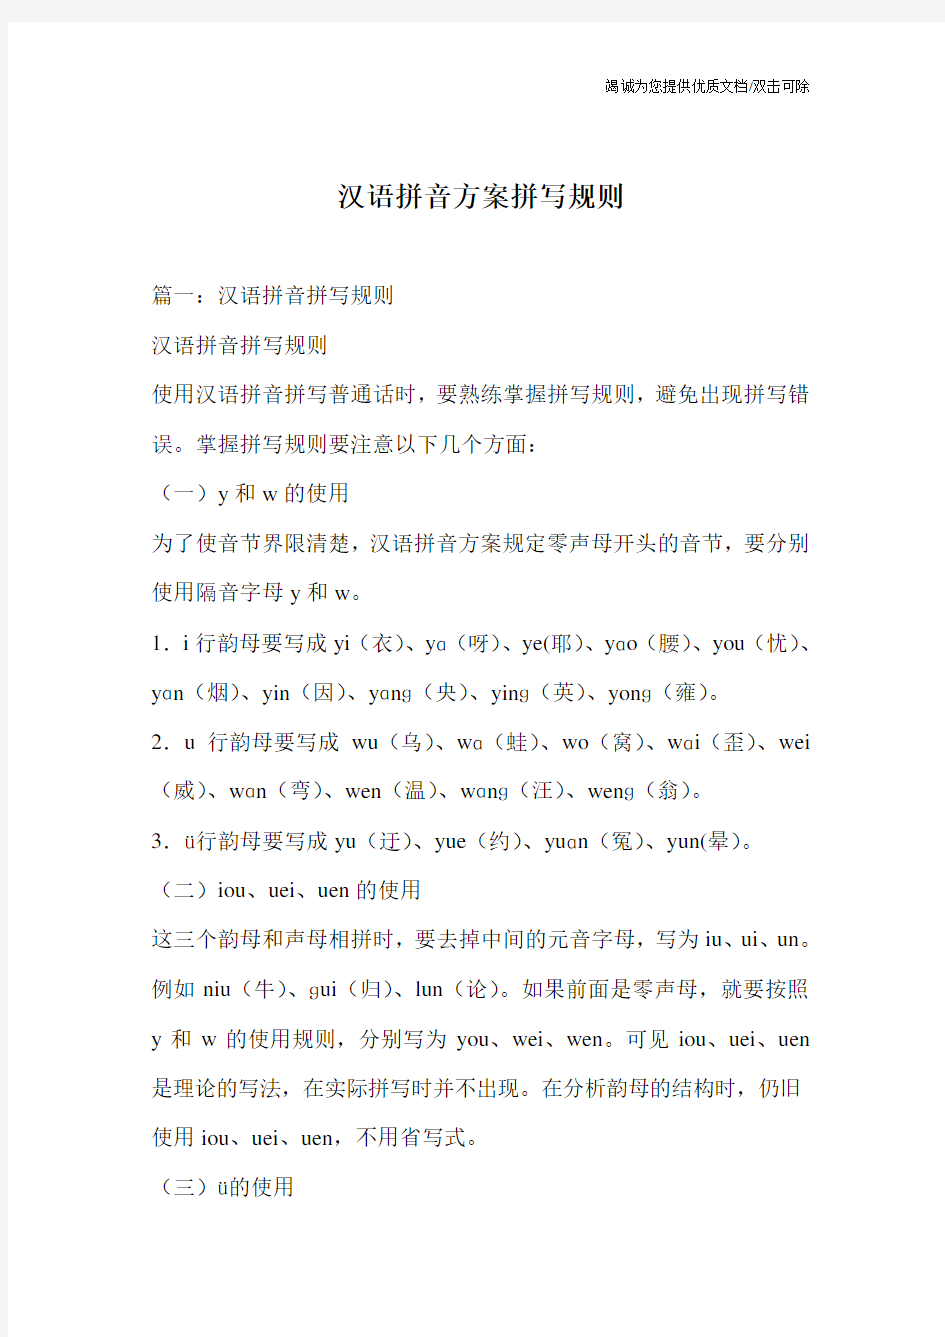 汉语拼音方案拼写规则